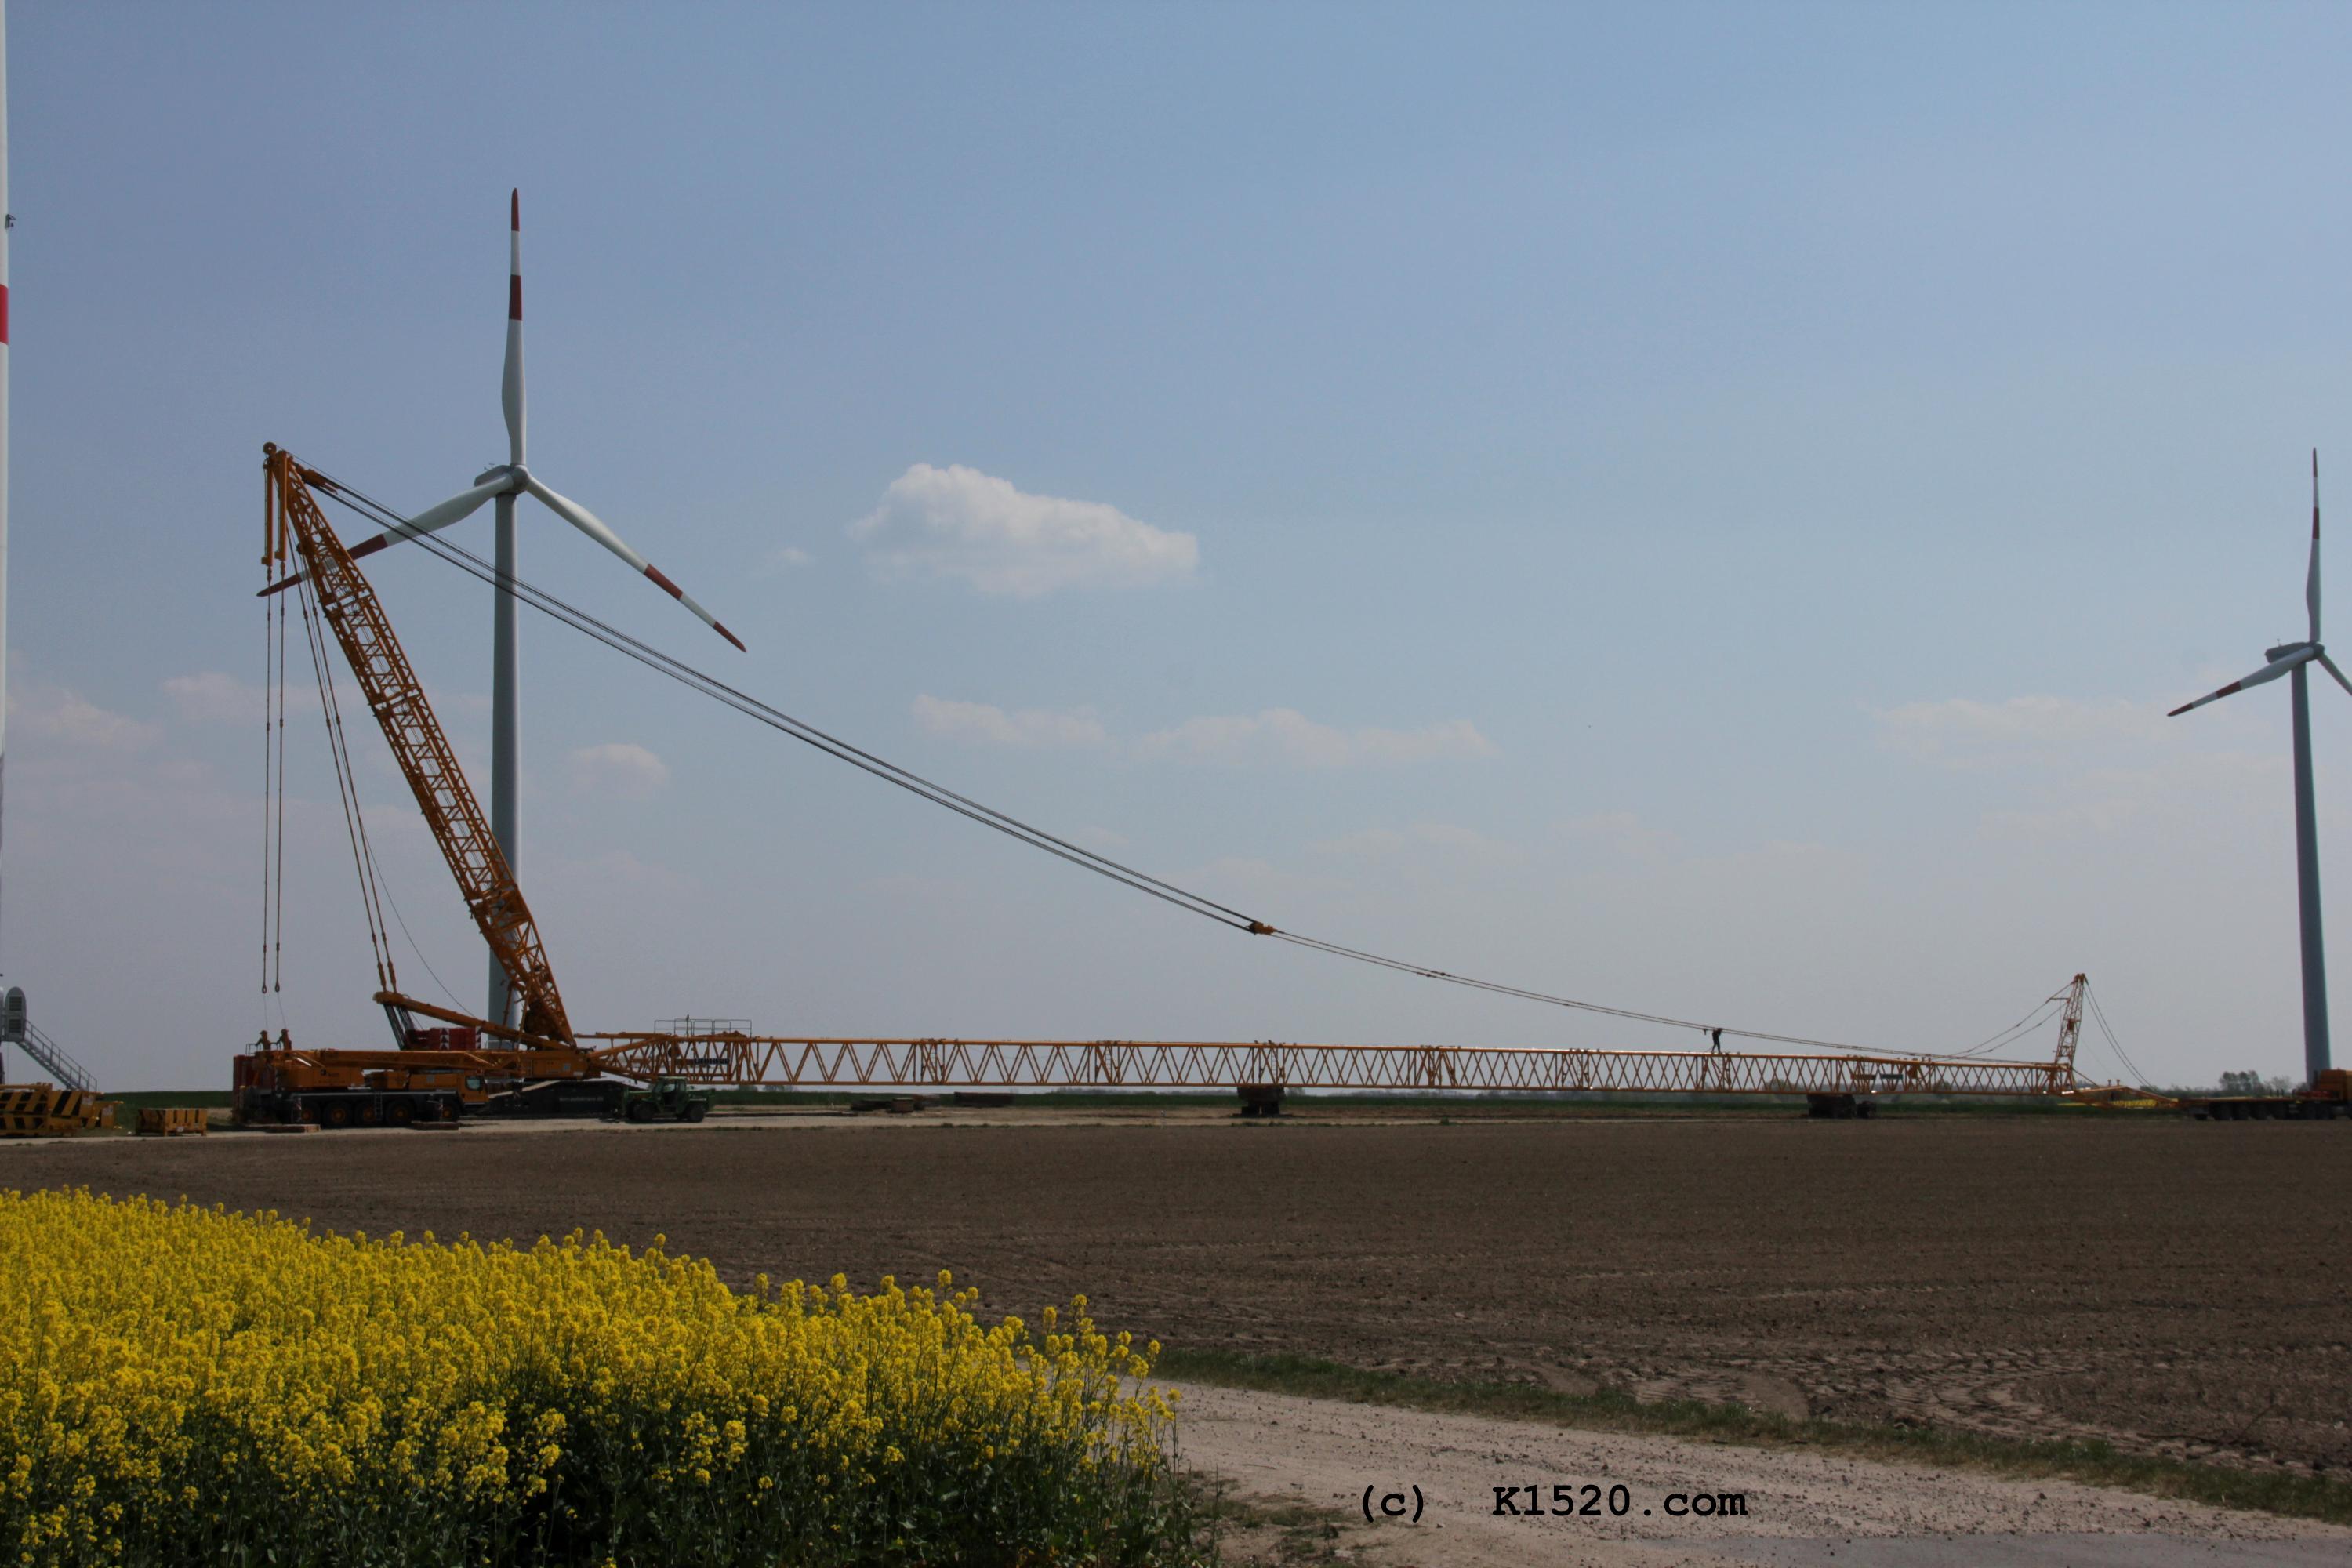 Reparatur Windrder im Windpark Arneburg/Elbe 04/2020,
  Kraneinsatz